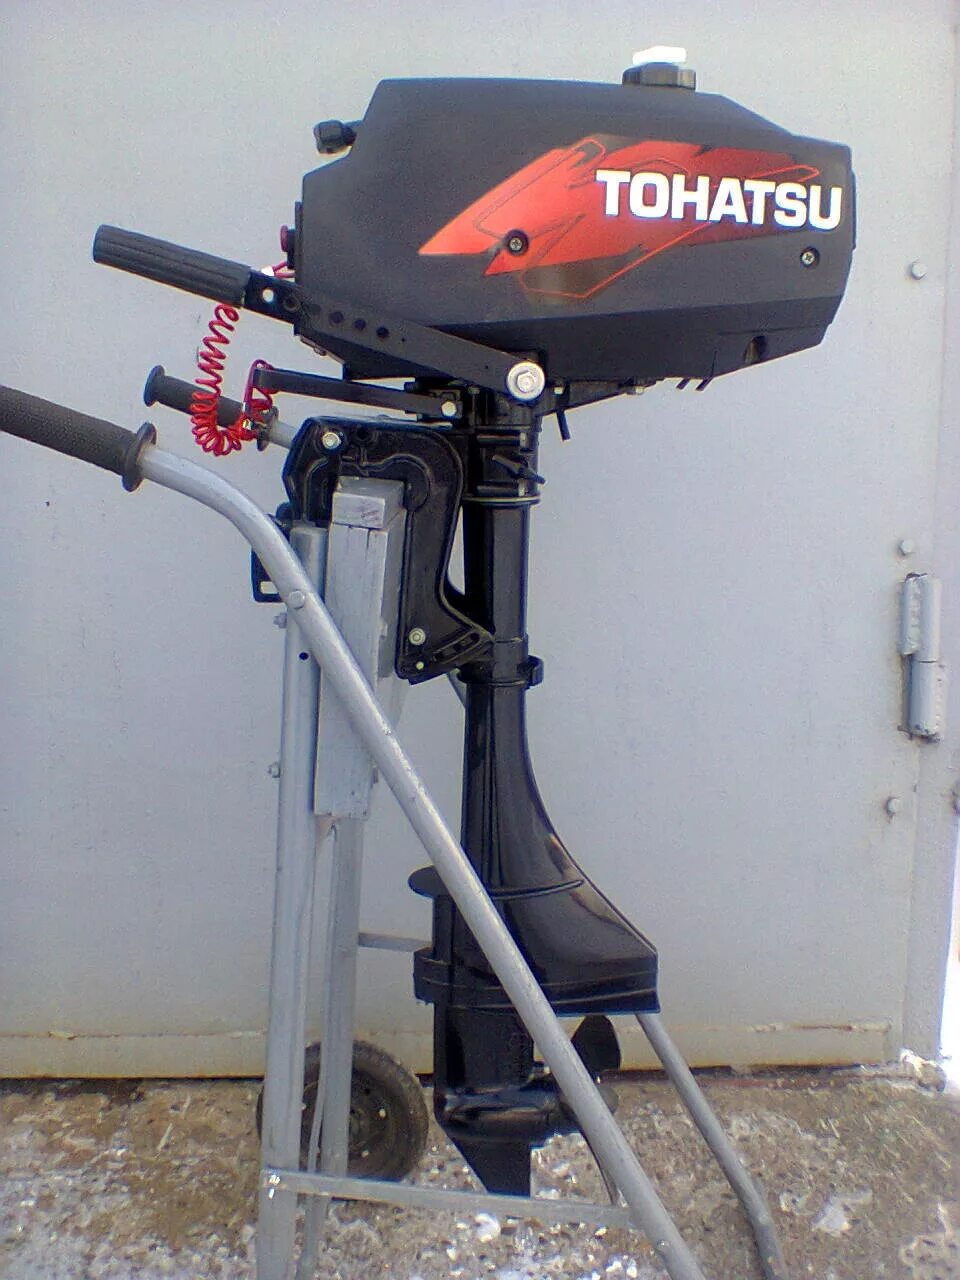 Лодочный мотор Tohatsu m 3.5b2 s. Лодочный мотор Тохатсу 3.5. Лодочный мотор Тохатсу 2.5. Лодочный мотор Tohatsu м 3.5 b2 s. Купить лодочный мотор дешево